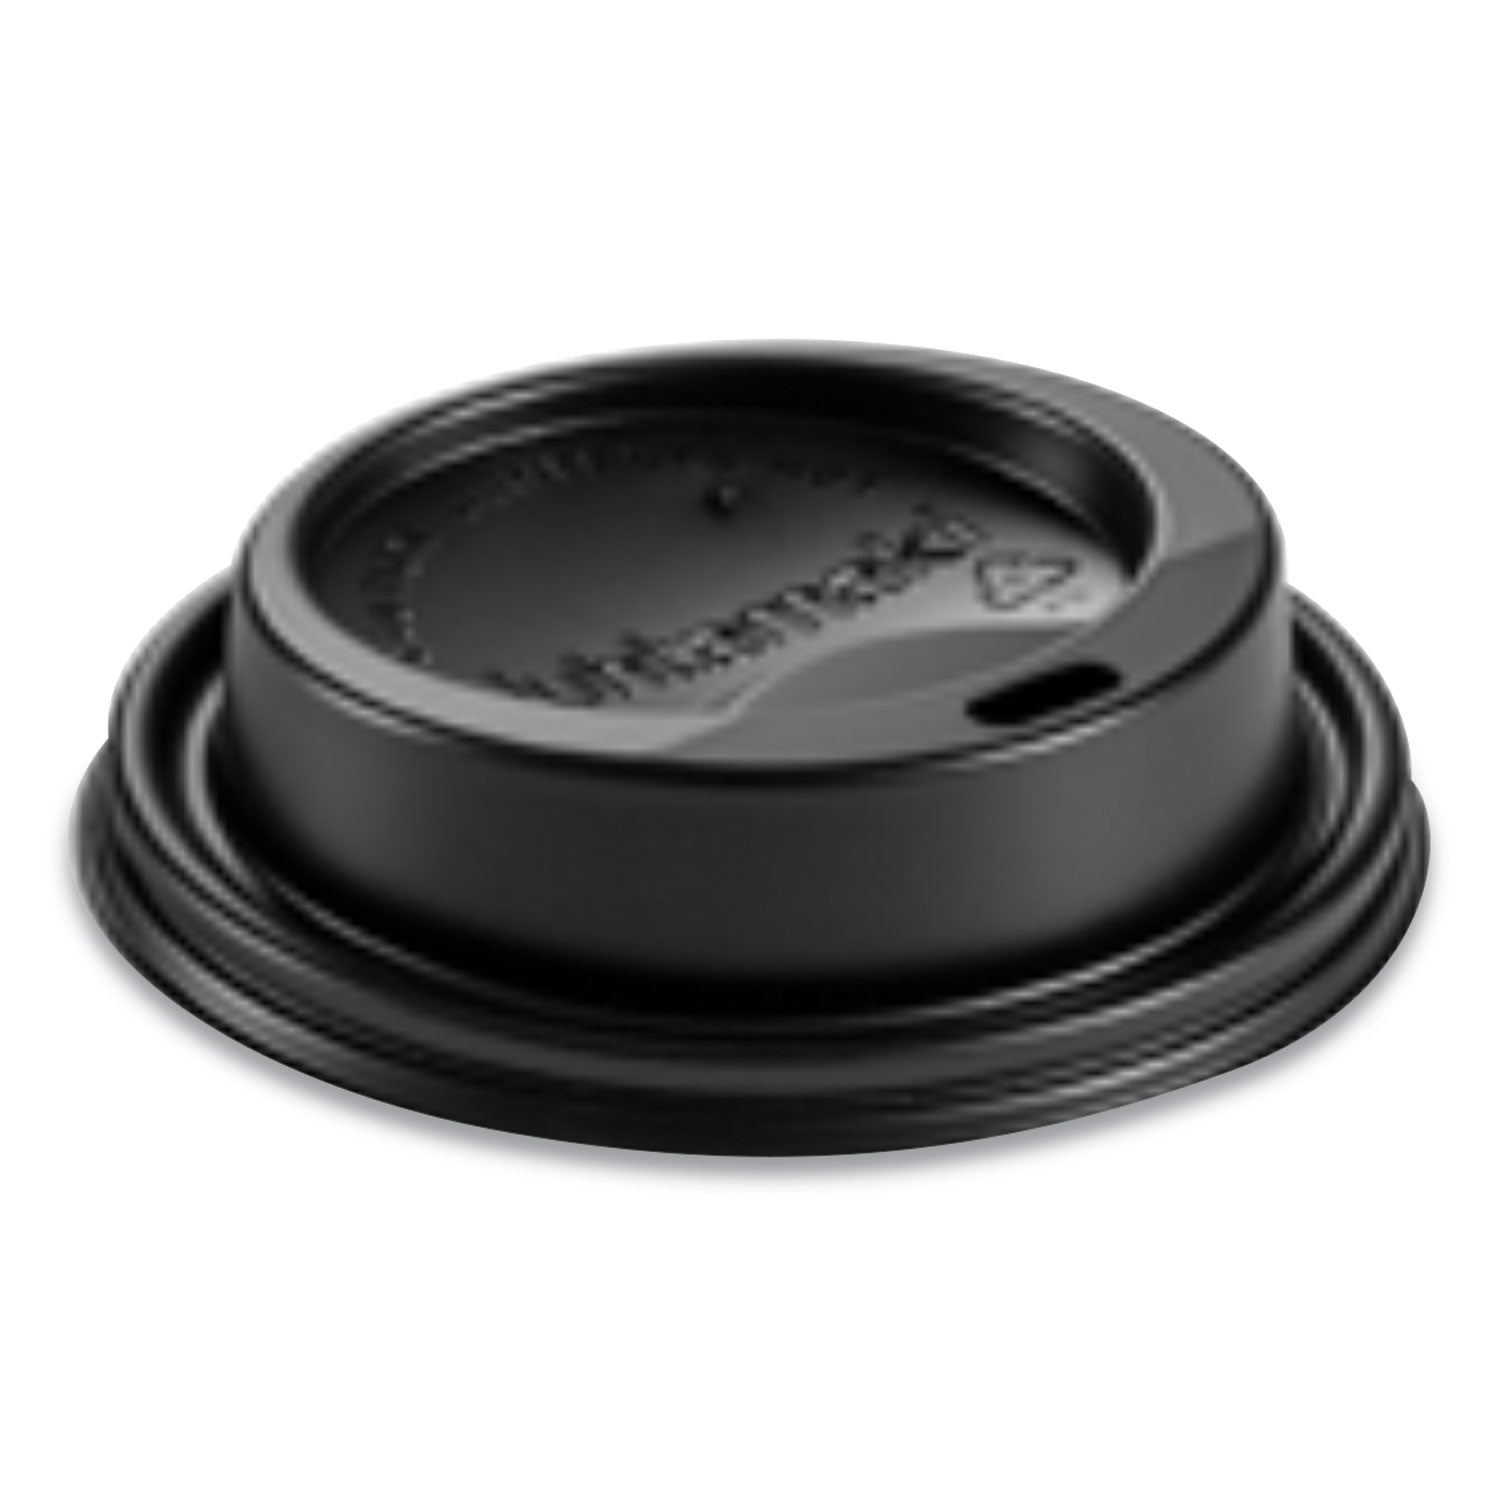 dome-sipper-hot-cup-lids-fits-8-oz-hot-cups-black-1000-carton_huh89435 - 1